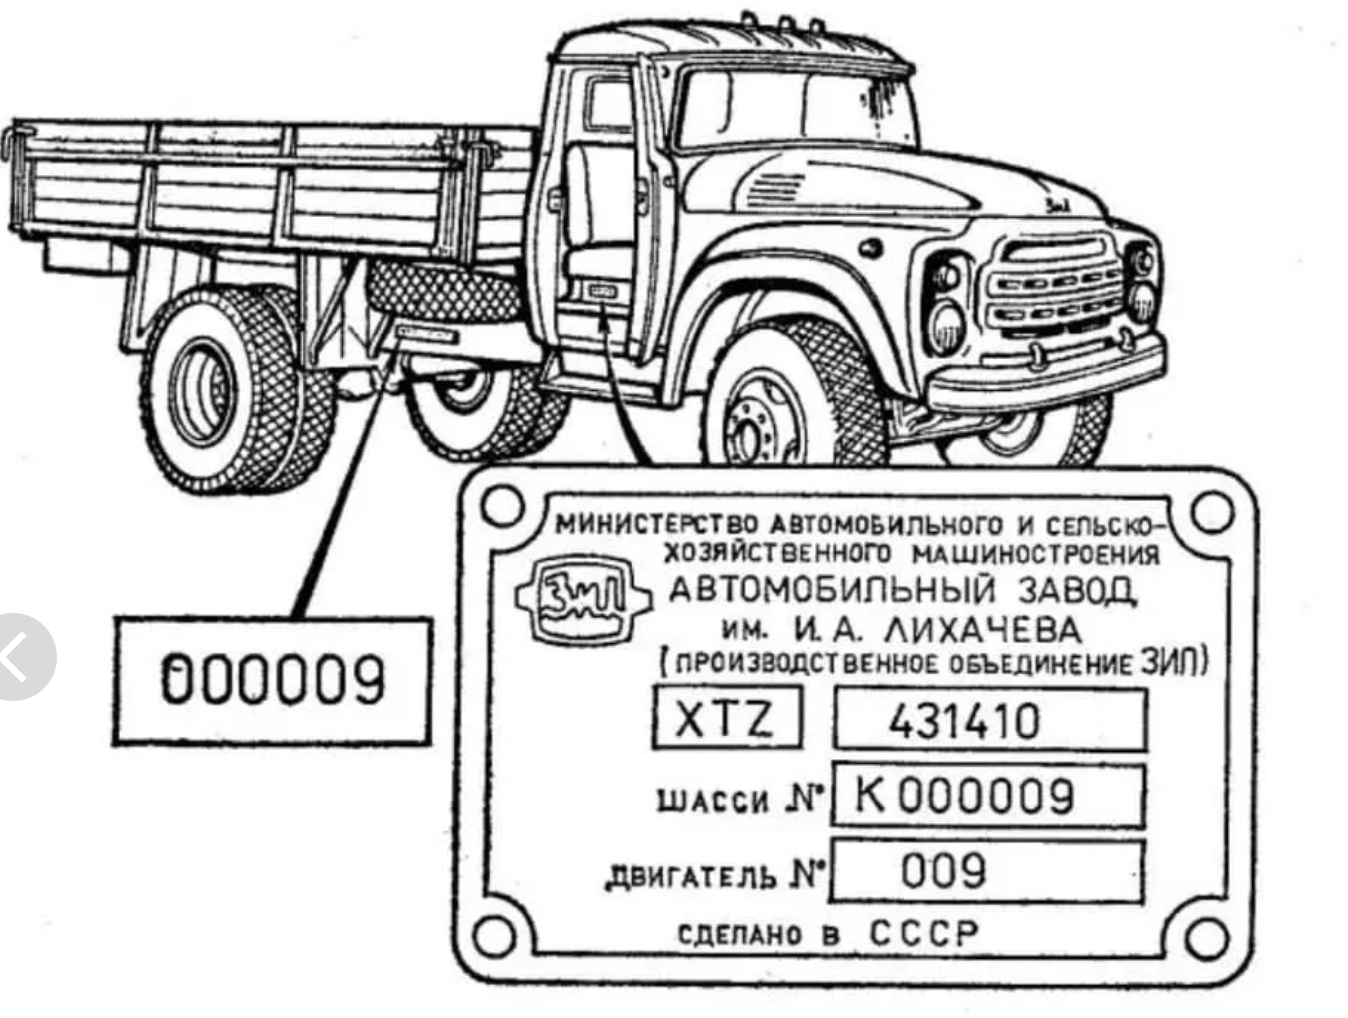 Требования к маркировке транспортных средств (шасси) идентификационным номером